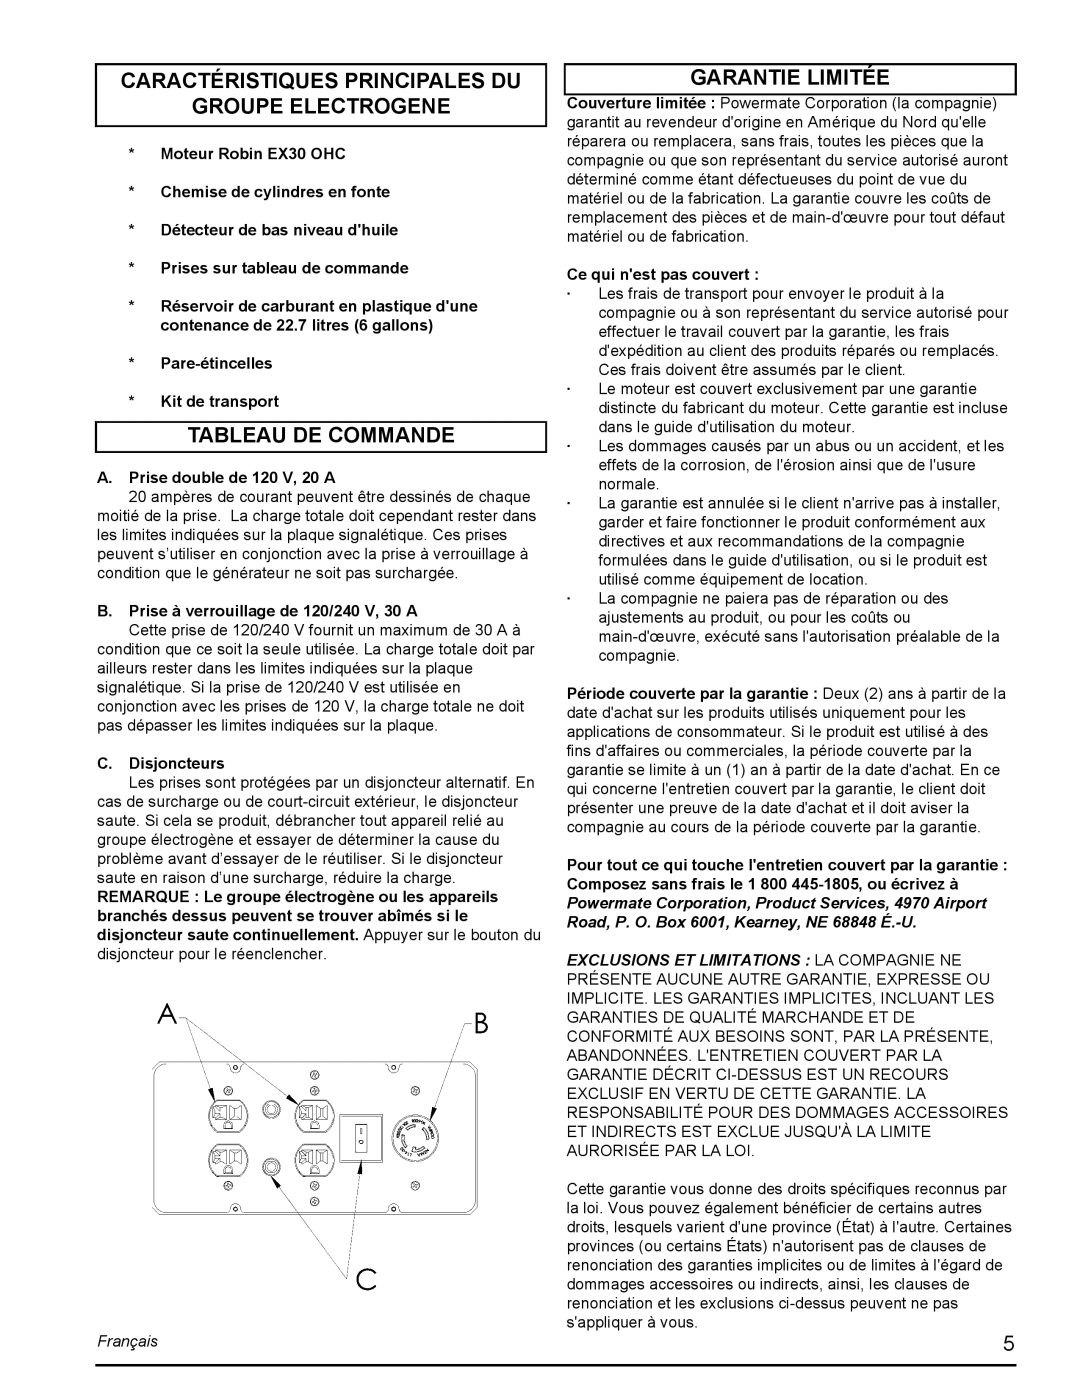 Powermate PMC435251 Caractéristiques Principales Du, Groupe Electrogene, Tableau De Commande, Garantie Limitée, Français 